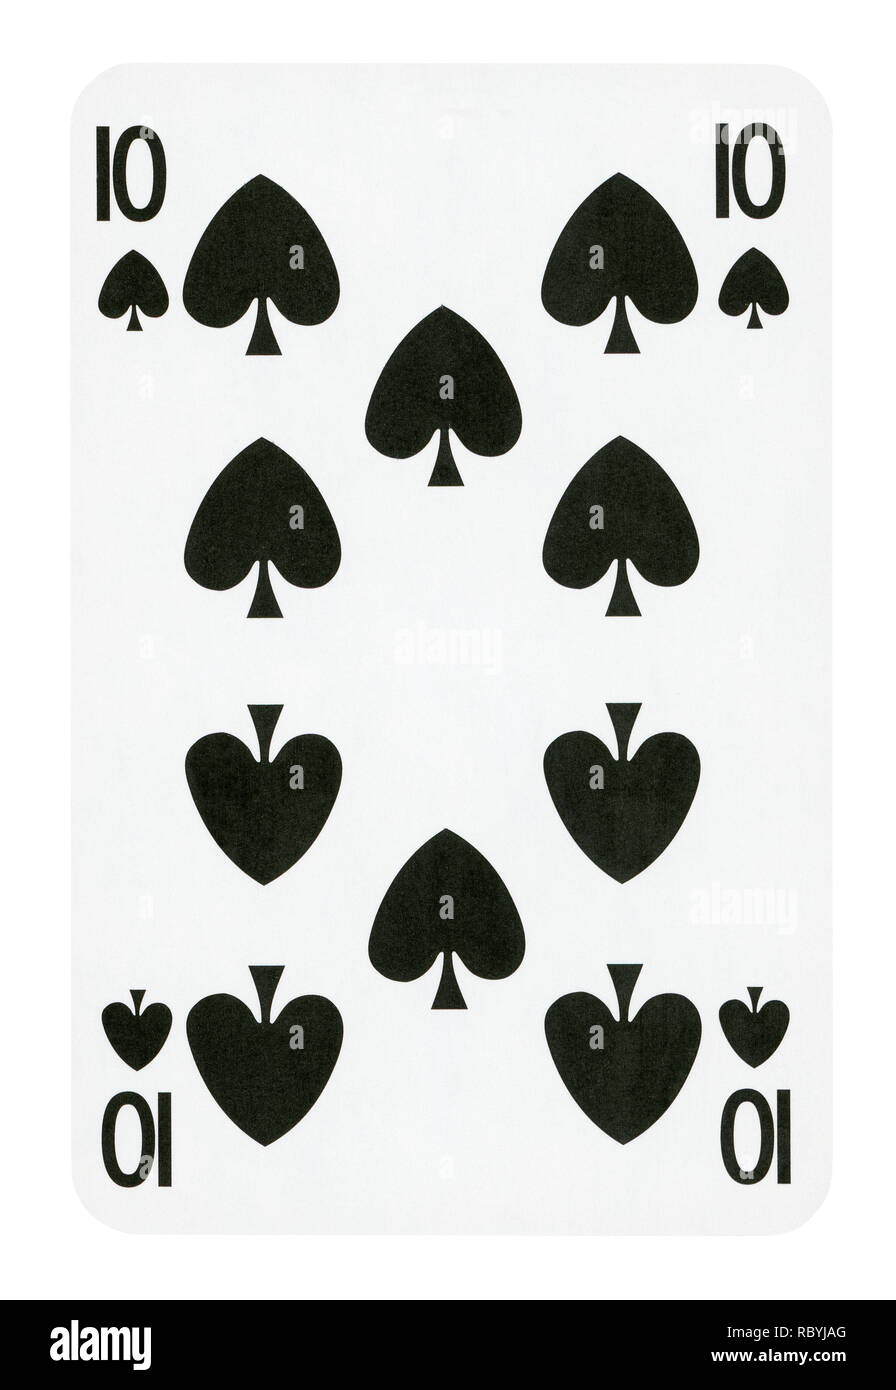 Dix de pique jeu de carte - isolated on white (chemin inclus) Banque D'Images